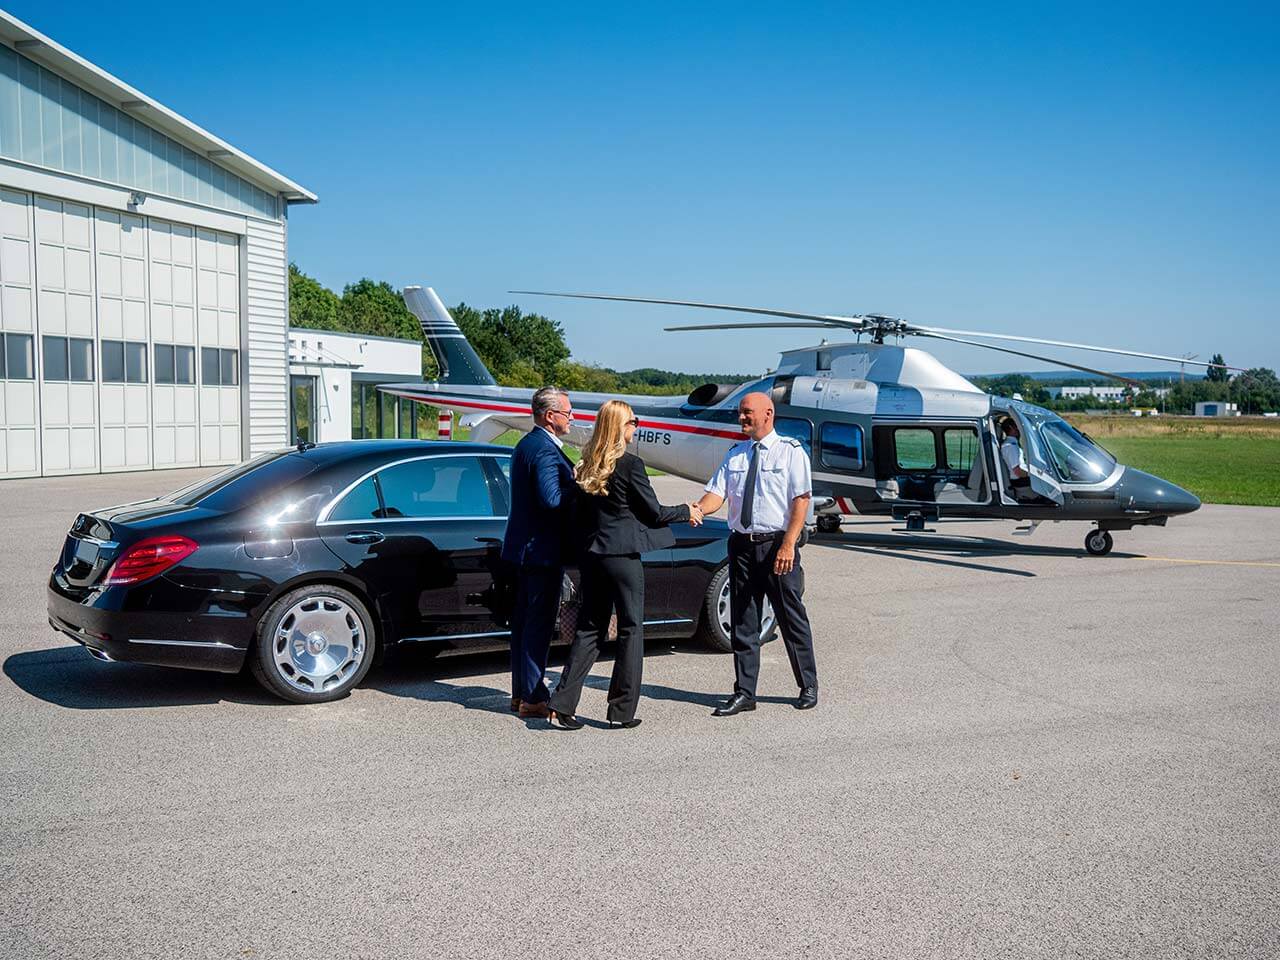 VIP Class Privat- & Businessflüge: BHS Aviation holt Sie ab und bringt Sie per Helikopter oder Jet auf direktem Weg zu Ihrem Ziel